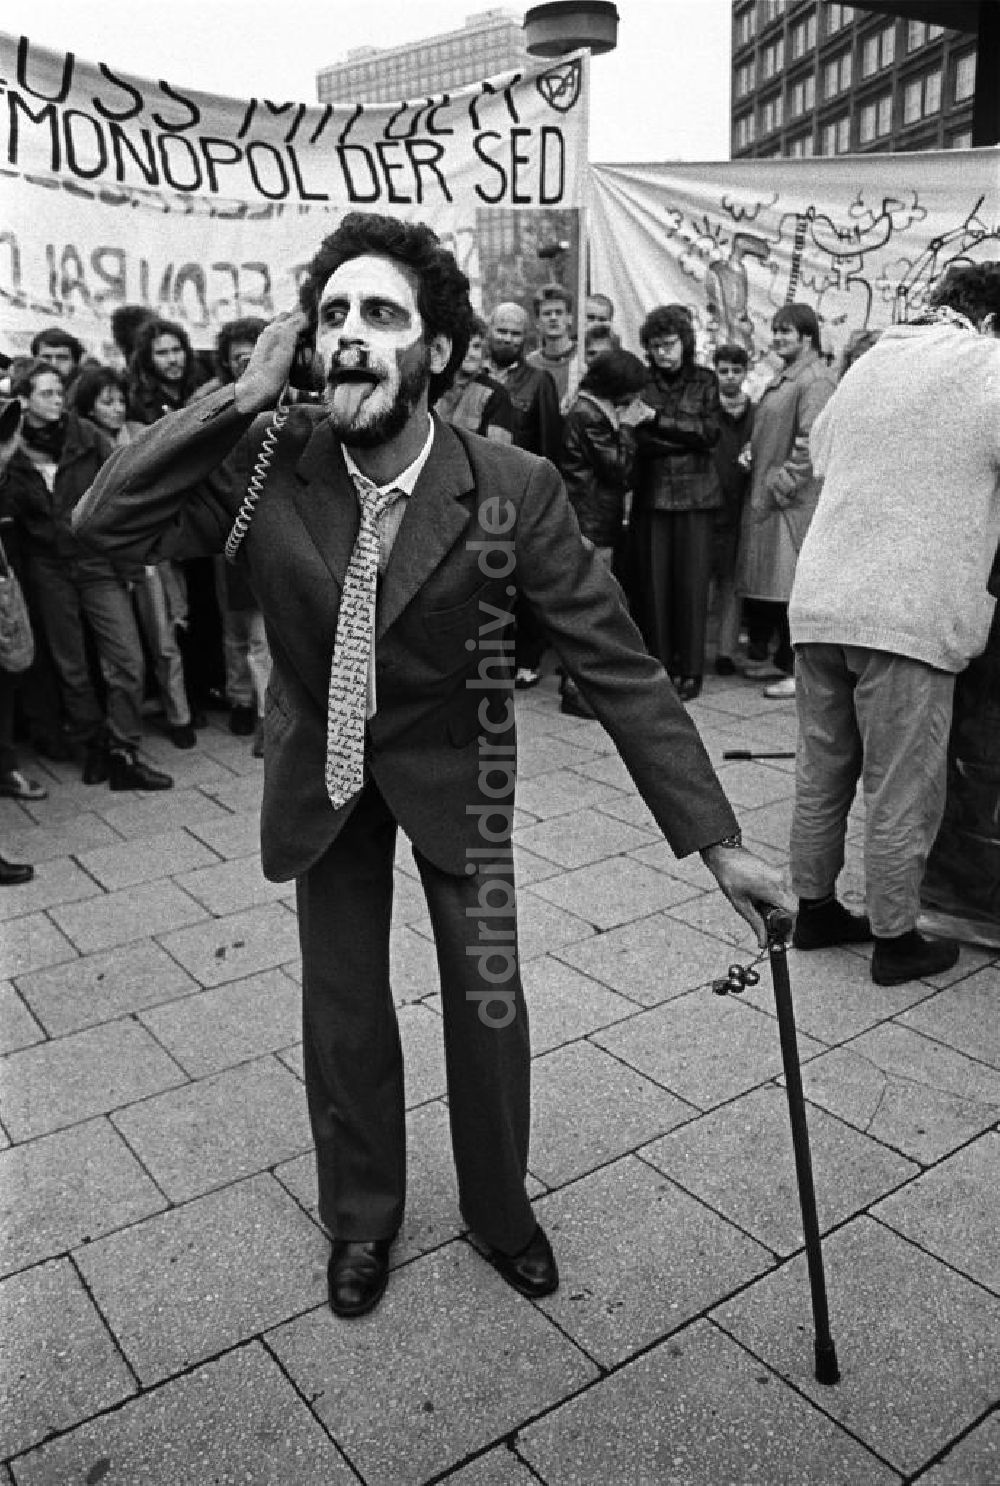 DDR-Bildarchiv: Berlin - Demonstration am 09.11.1989 auf dem Alexanderplatz in Berlin